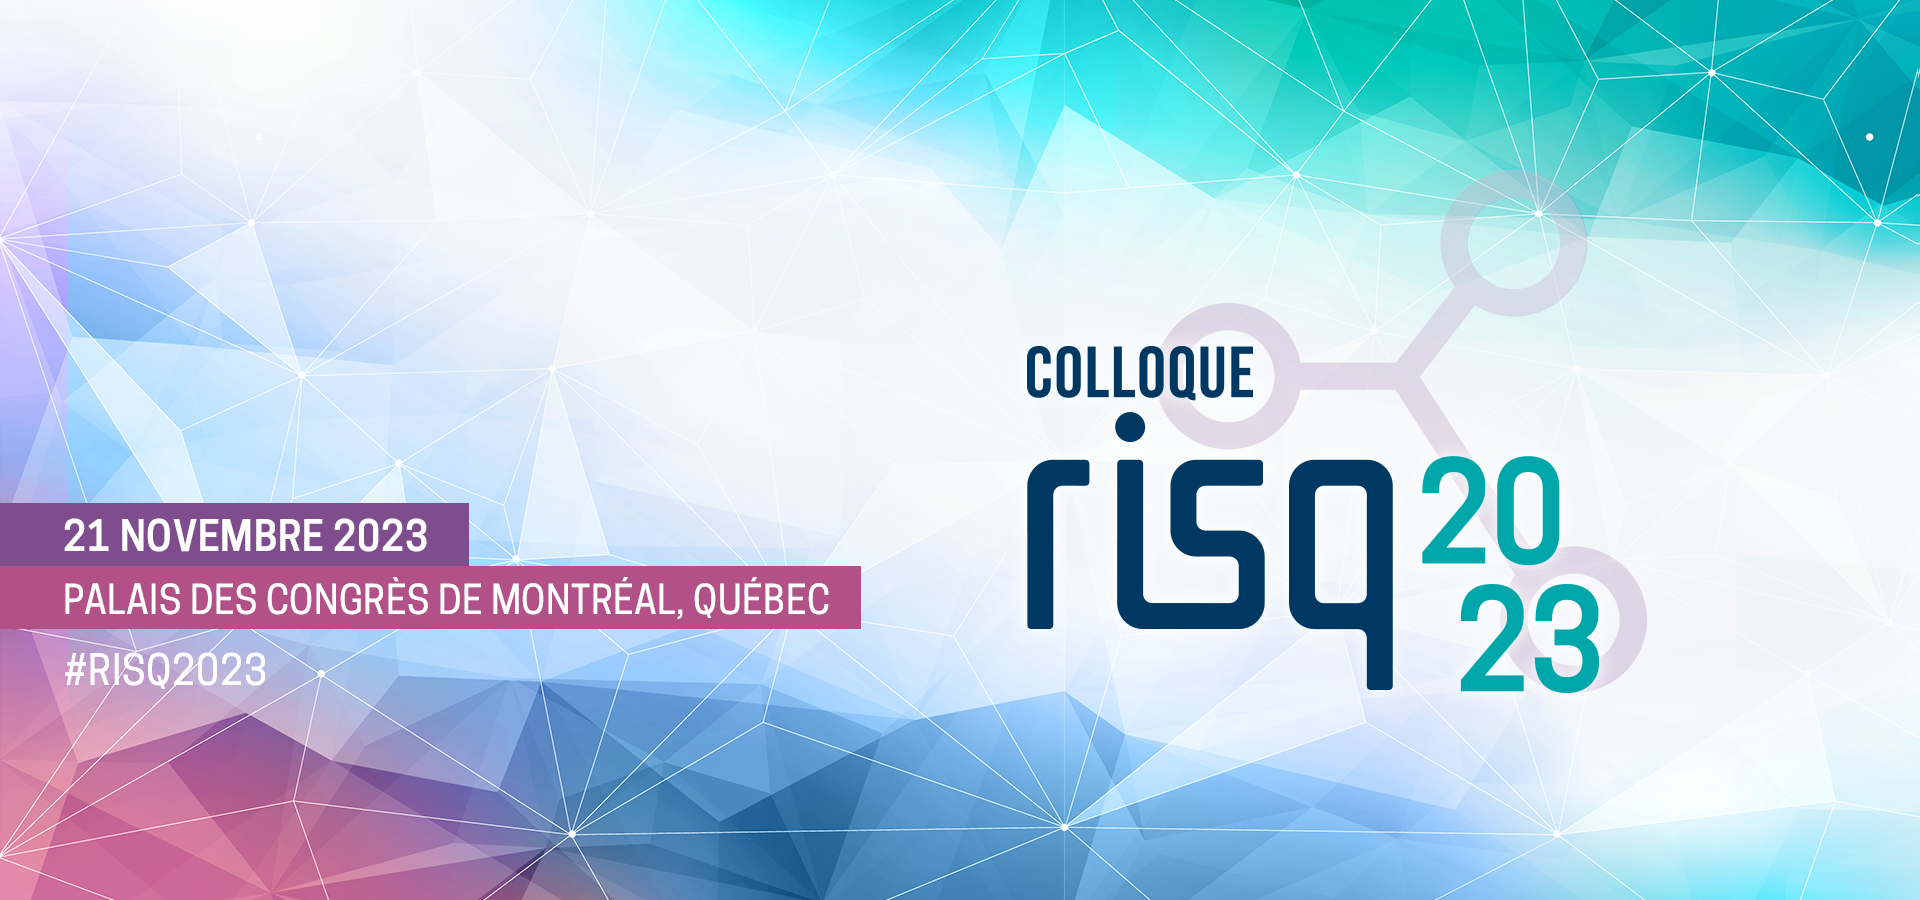 Visuel colloque RISQ 2023, le 21 novembre 2023 au Palais des congrès de Montréal